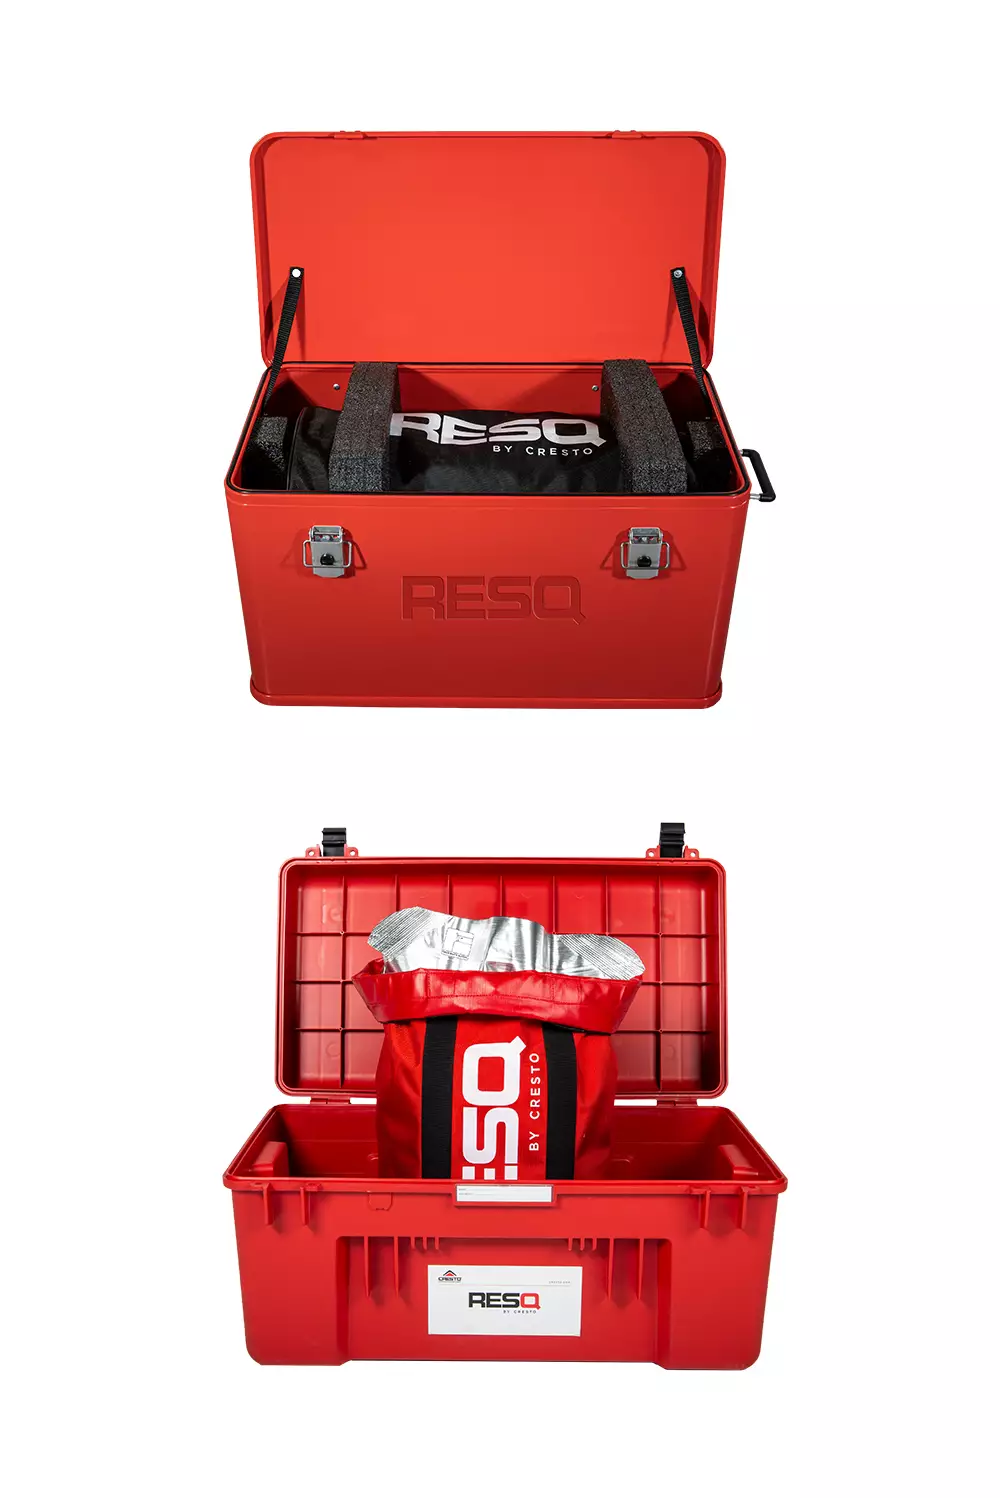 Aluminium rescue box with vacuum pack and original box red box with Vacuum packed rescue equipment